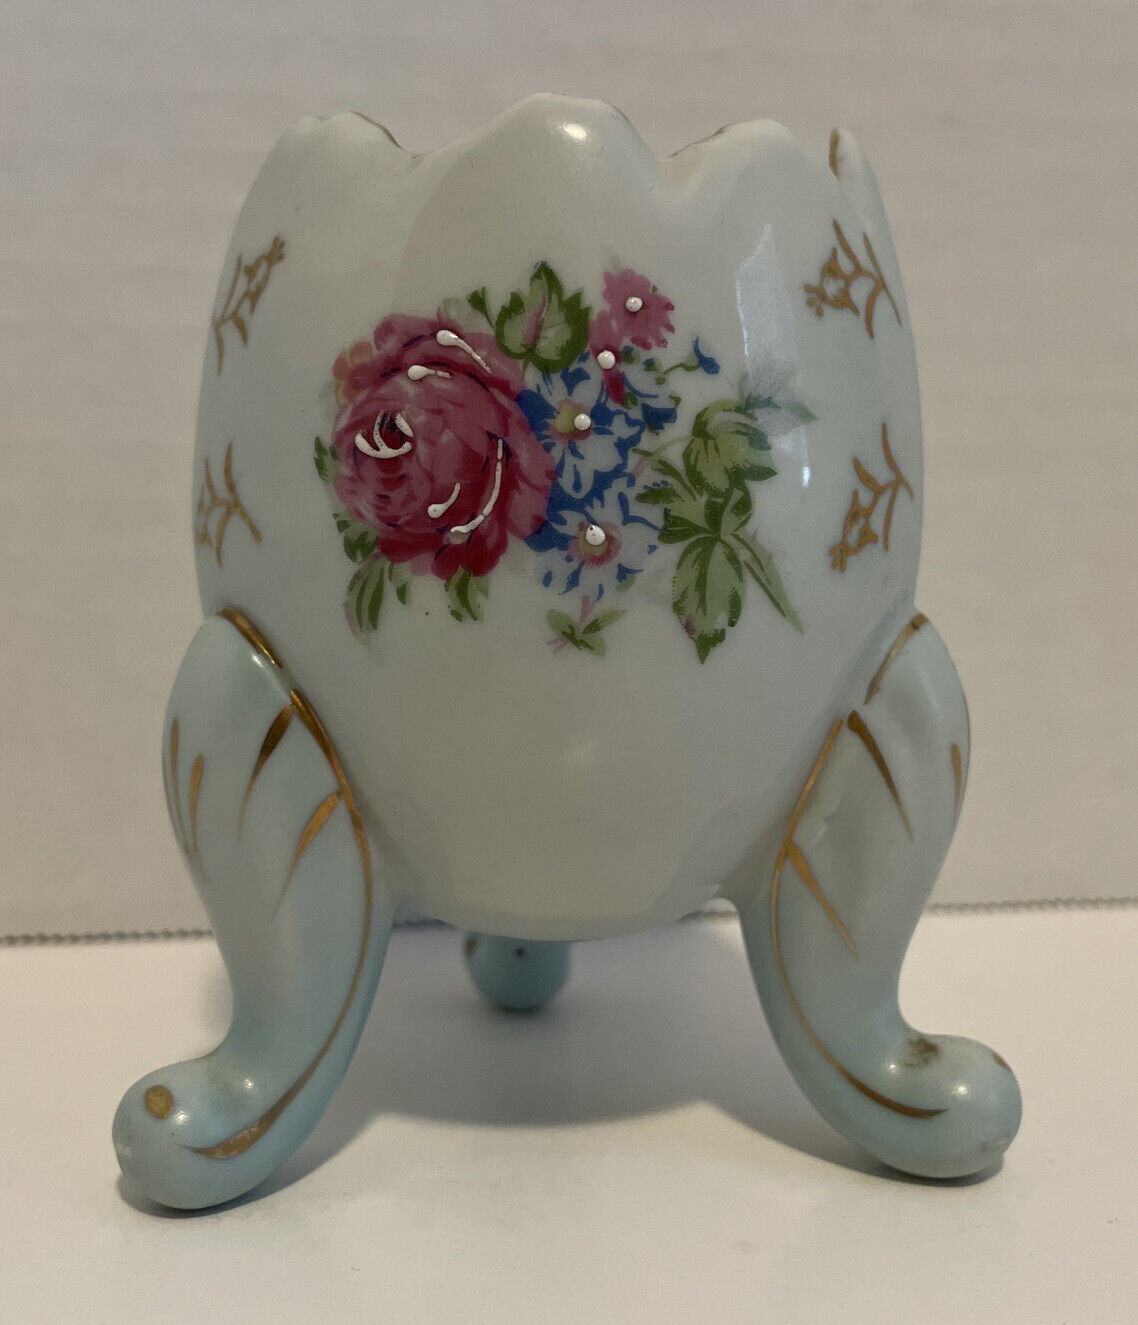 Napcoware 4” Cracked Egg Porcelain Footed Vase Blue Roses Gold Trim Vintage